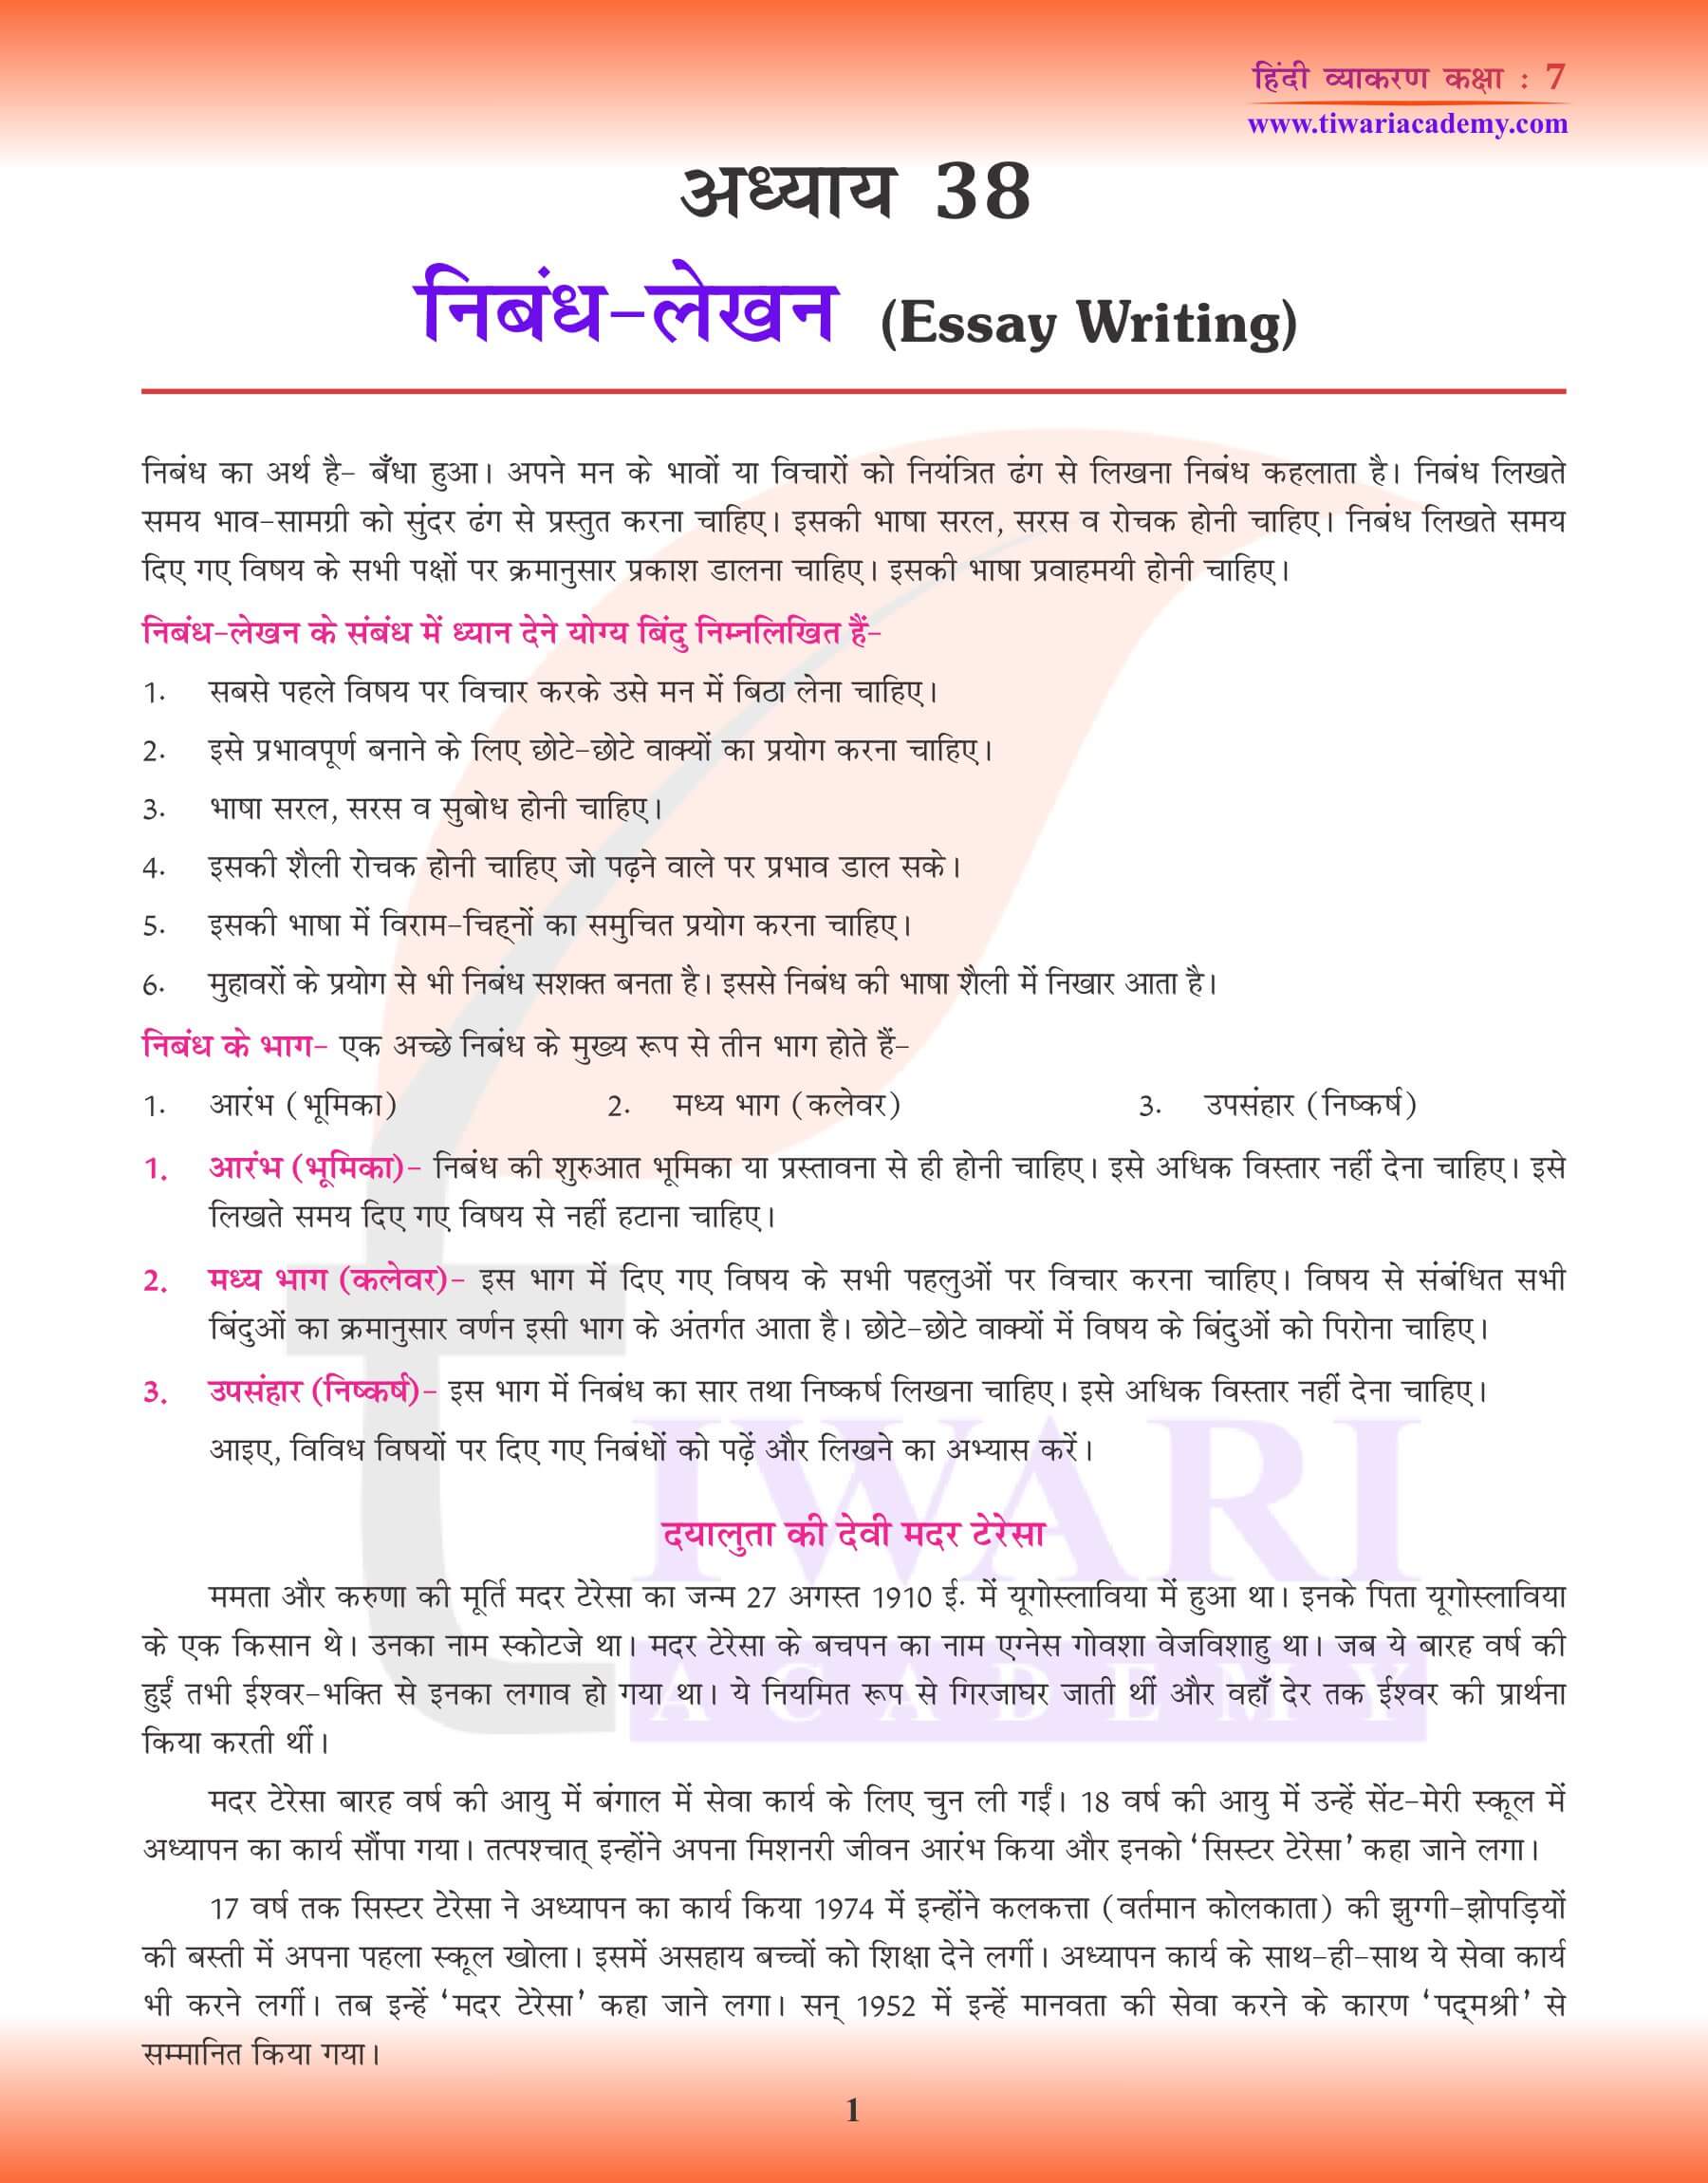 कक्षा 7 हिंदी व्याकरण में निबंध लेखन अभ्यास पुस्तिका